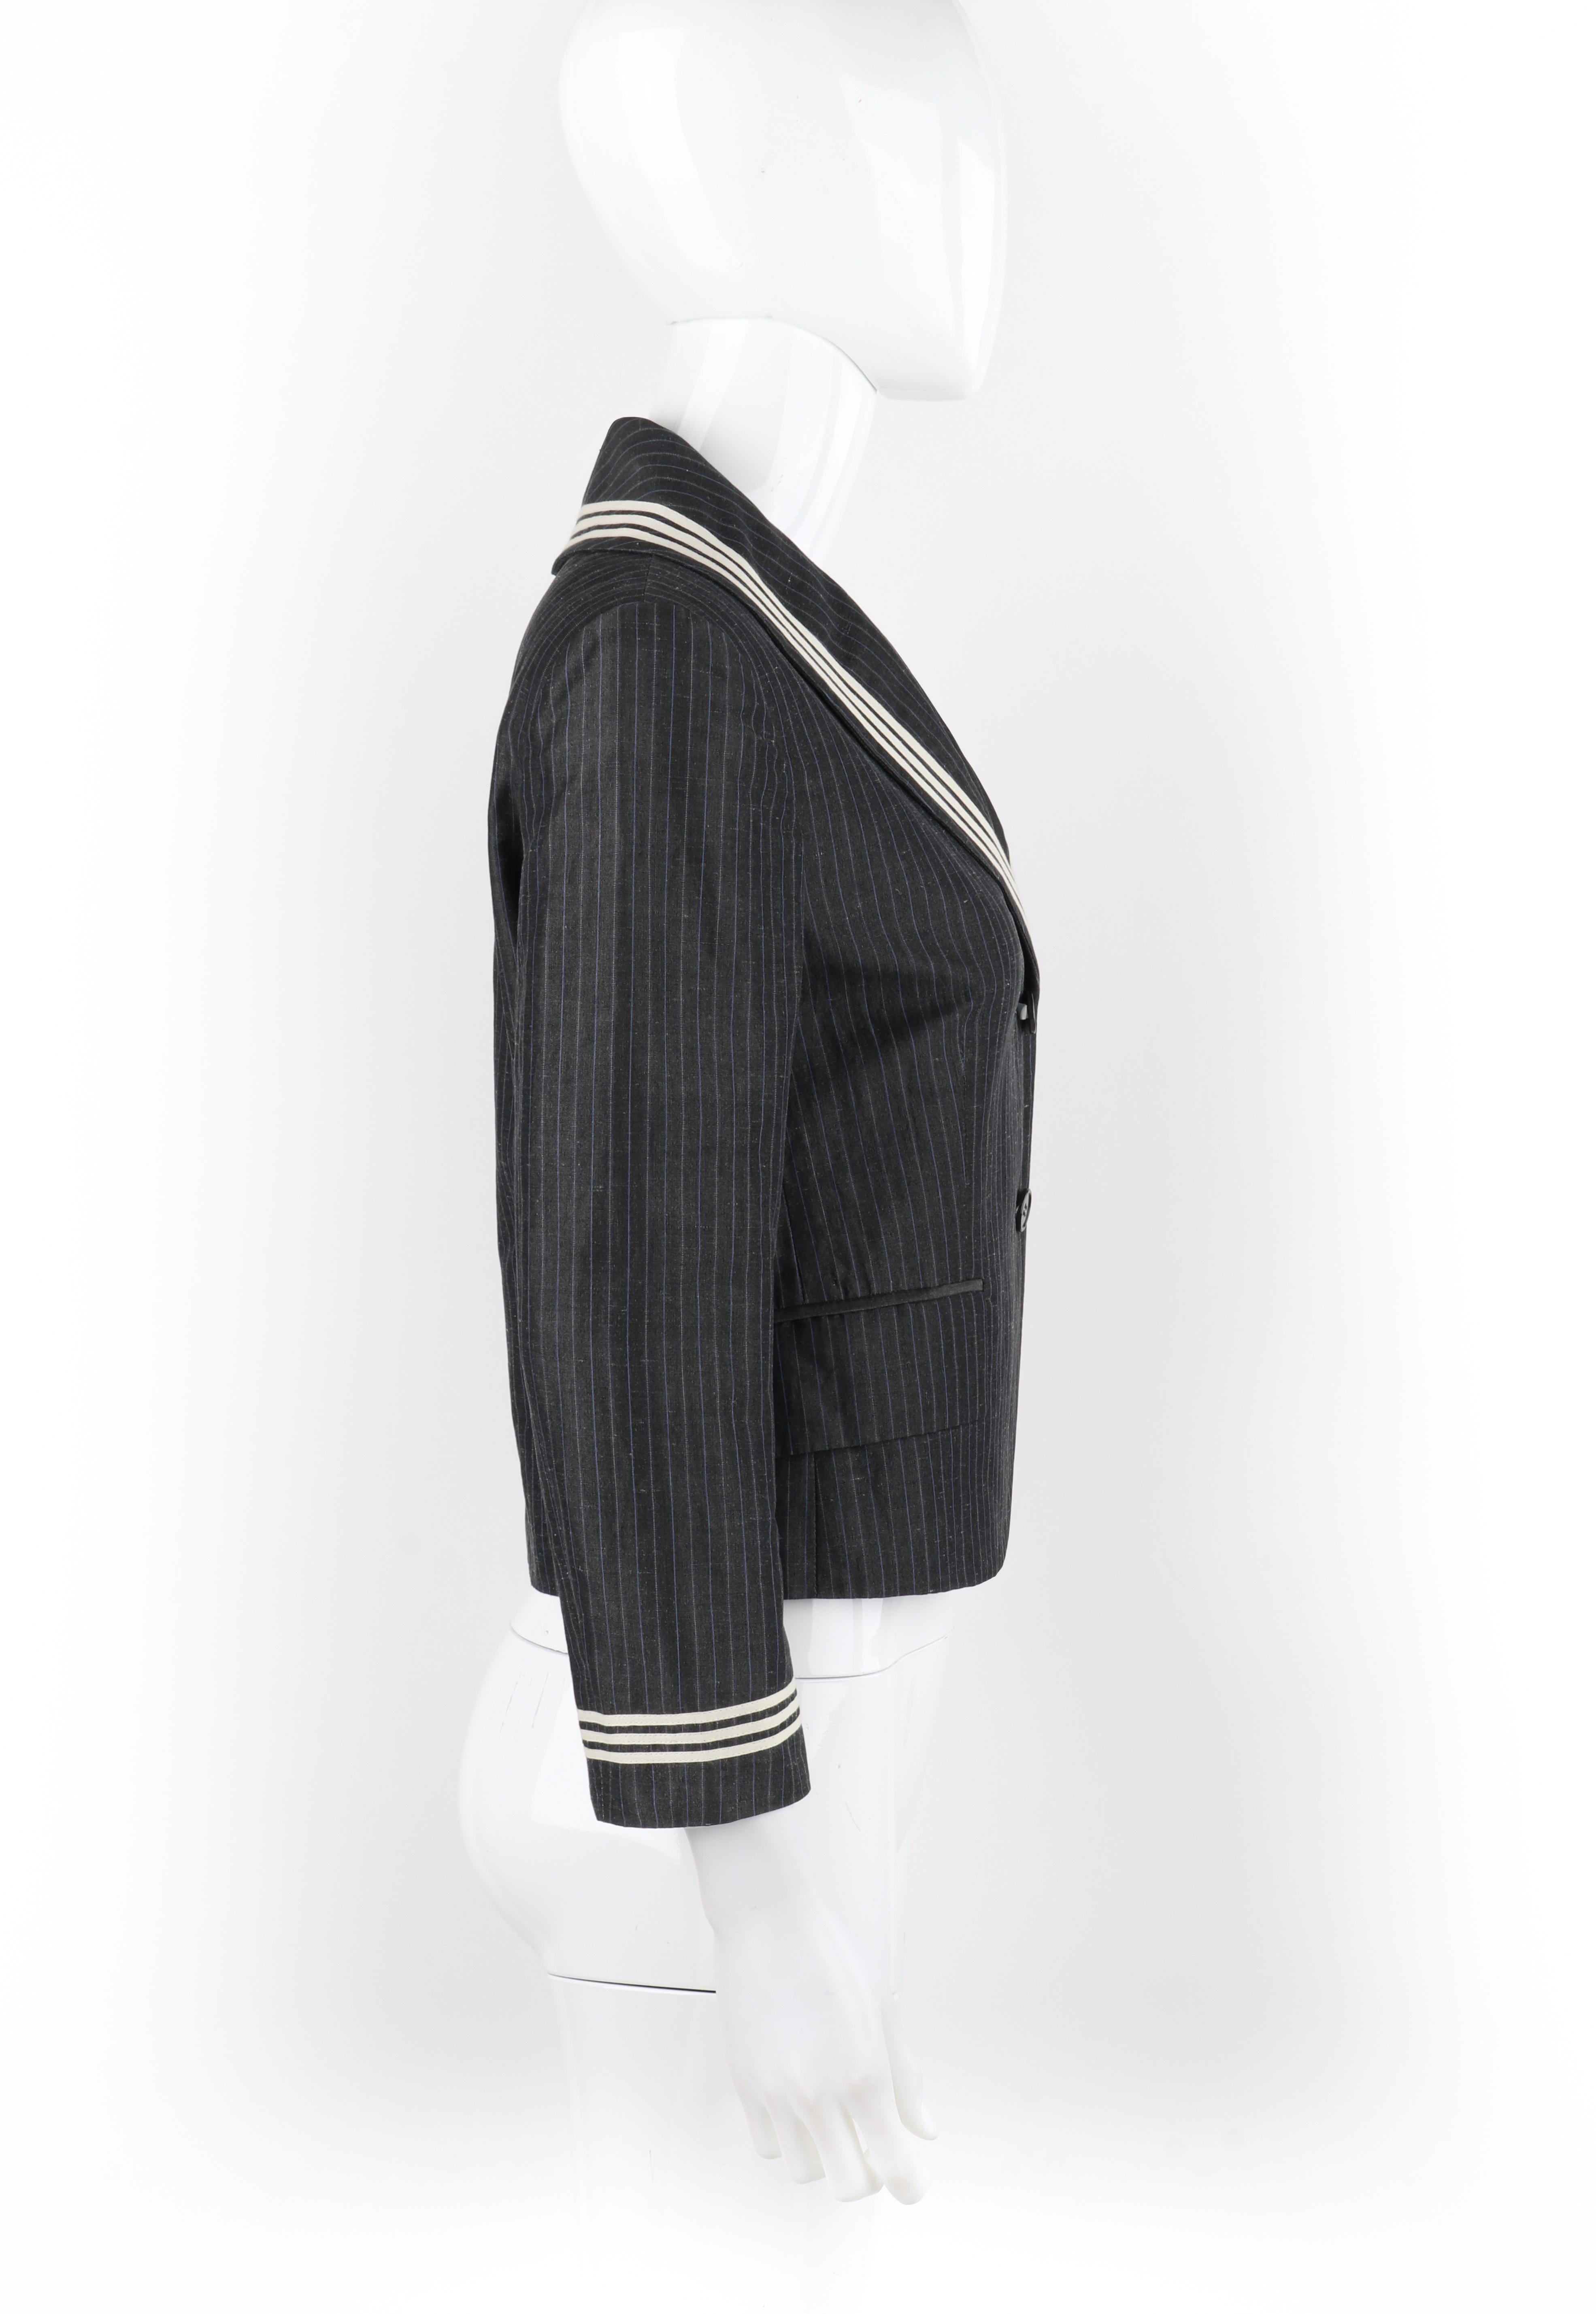 ALEXANDER McQUEEN S/S 2005 Grey Pinstripe Sailor Blazer Jacket Shawl Collar  In Good Condition For Sale In Thiensville, WI